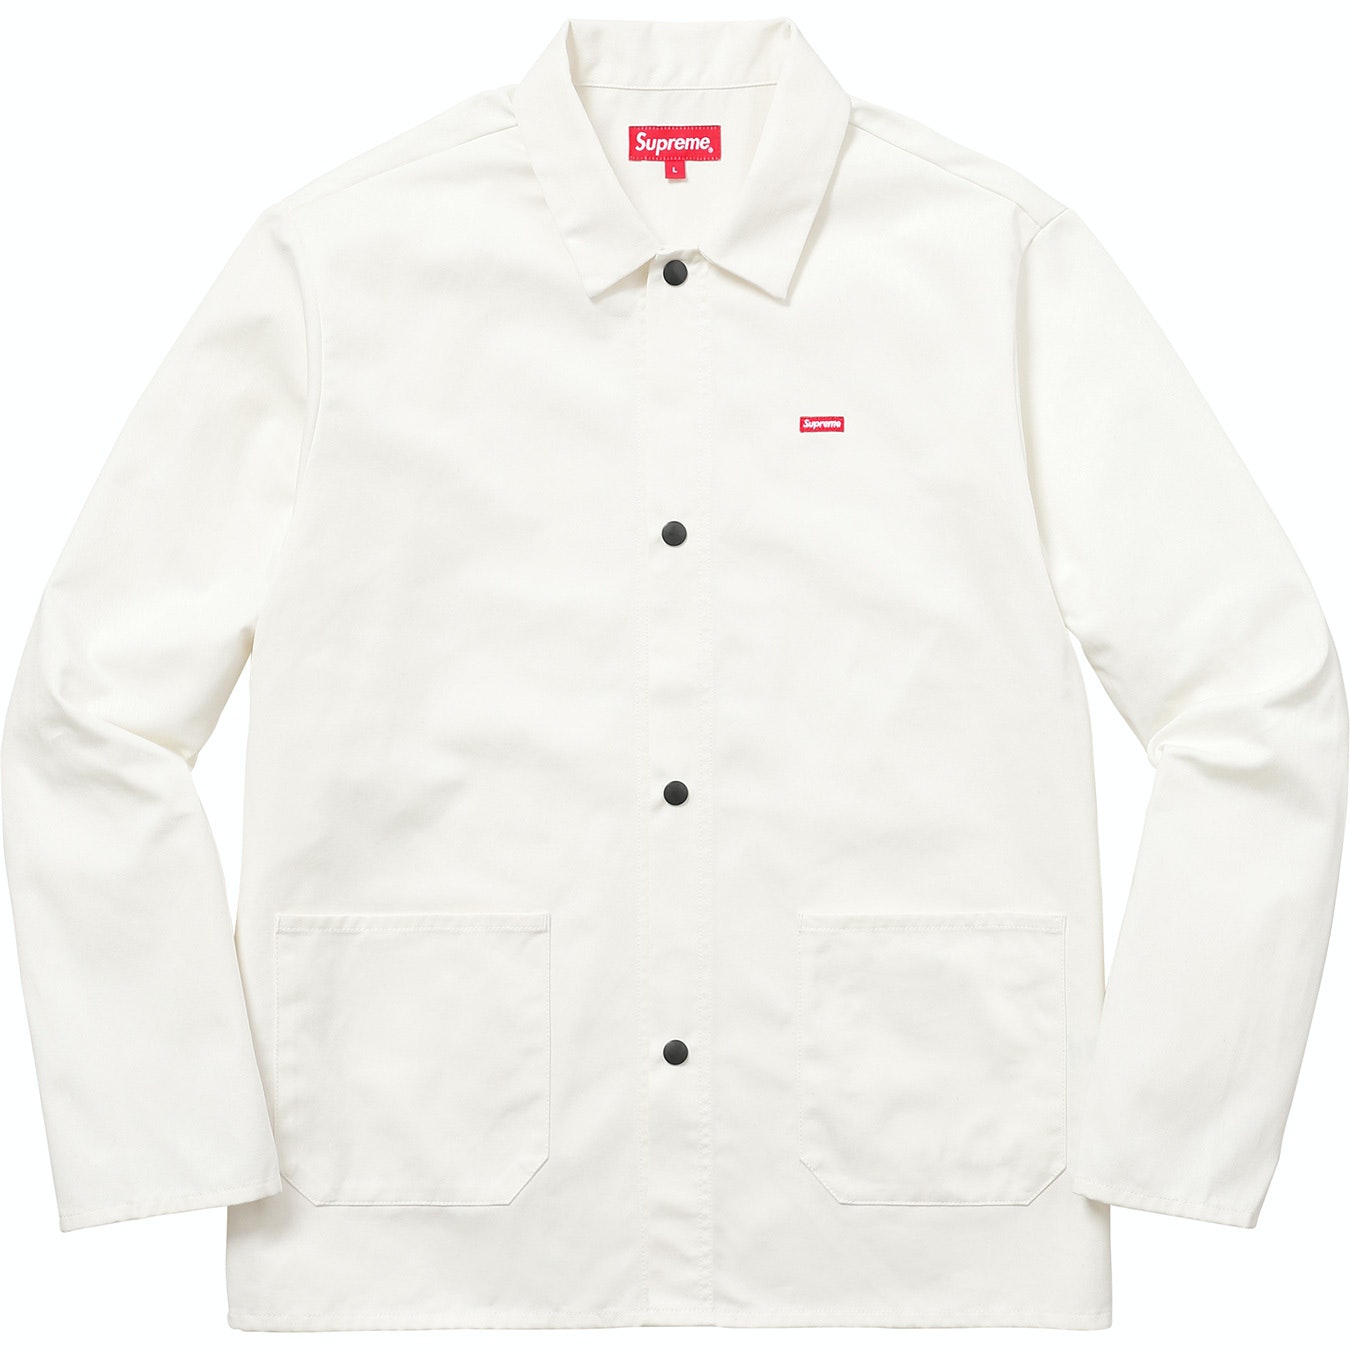 Supreme Shop Jacket White - FW17